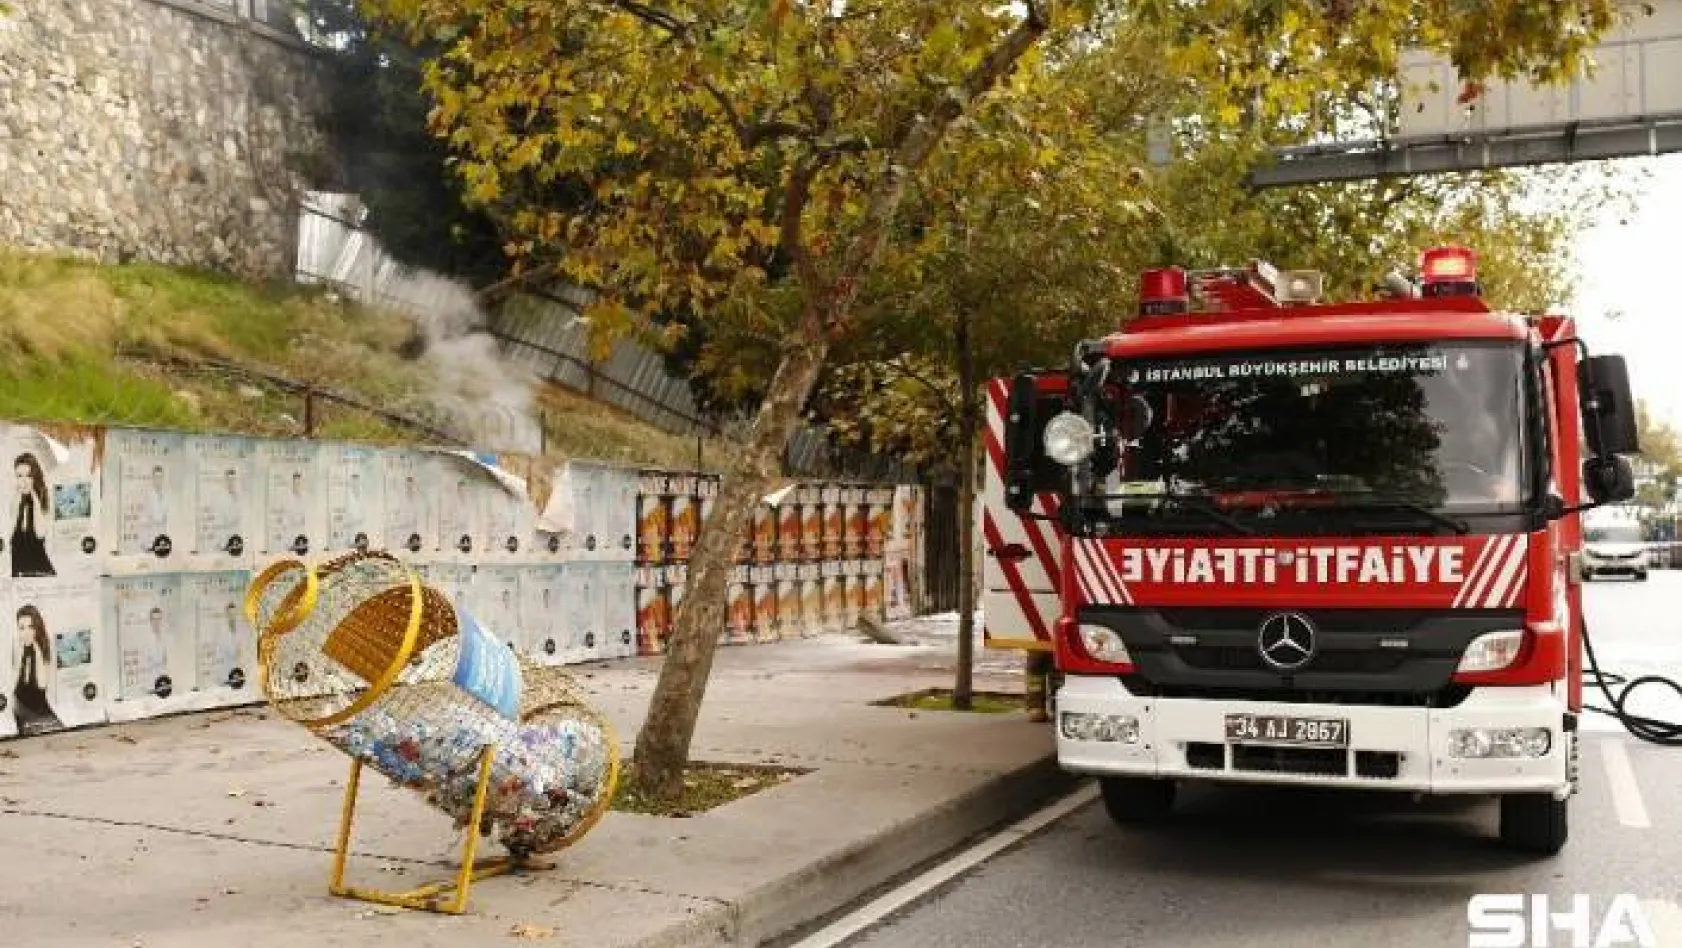 Beşiktaş'ta yer altındaki elektrik kablolarından dolayı yangın çıktı